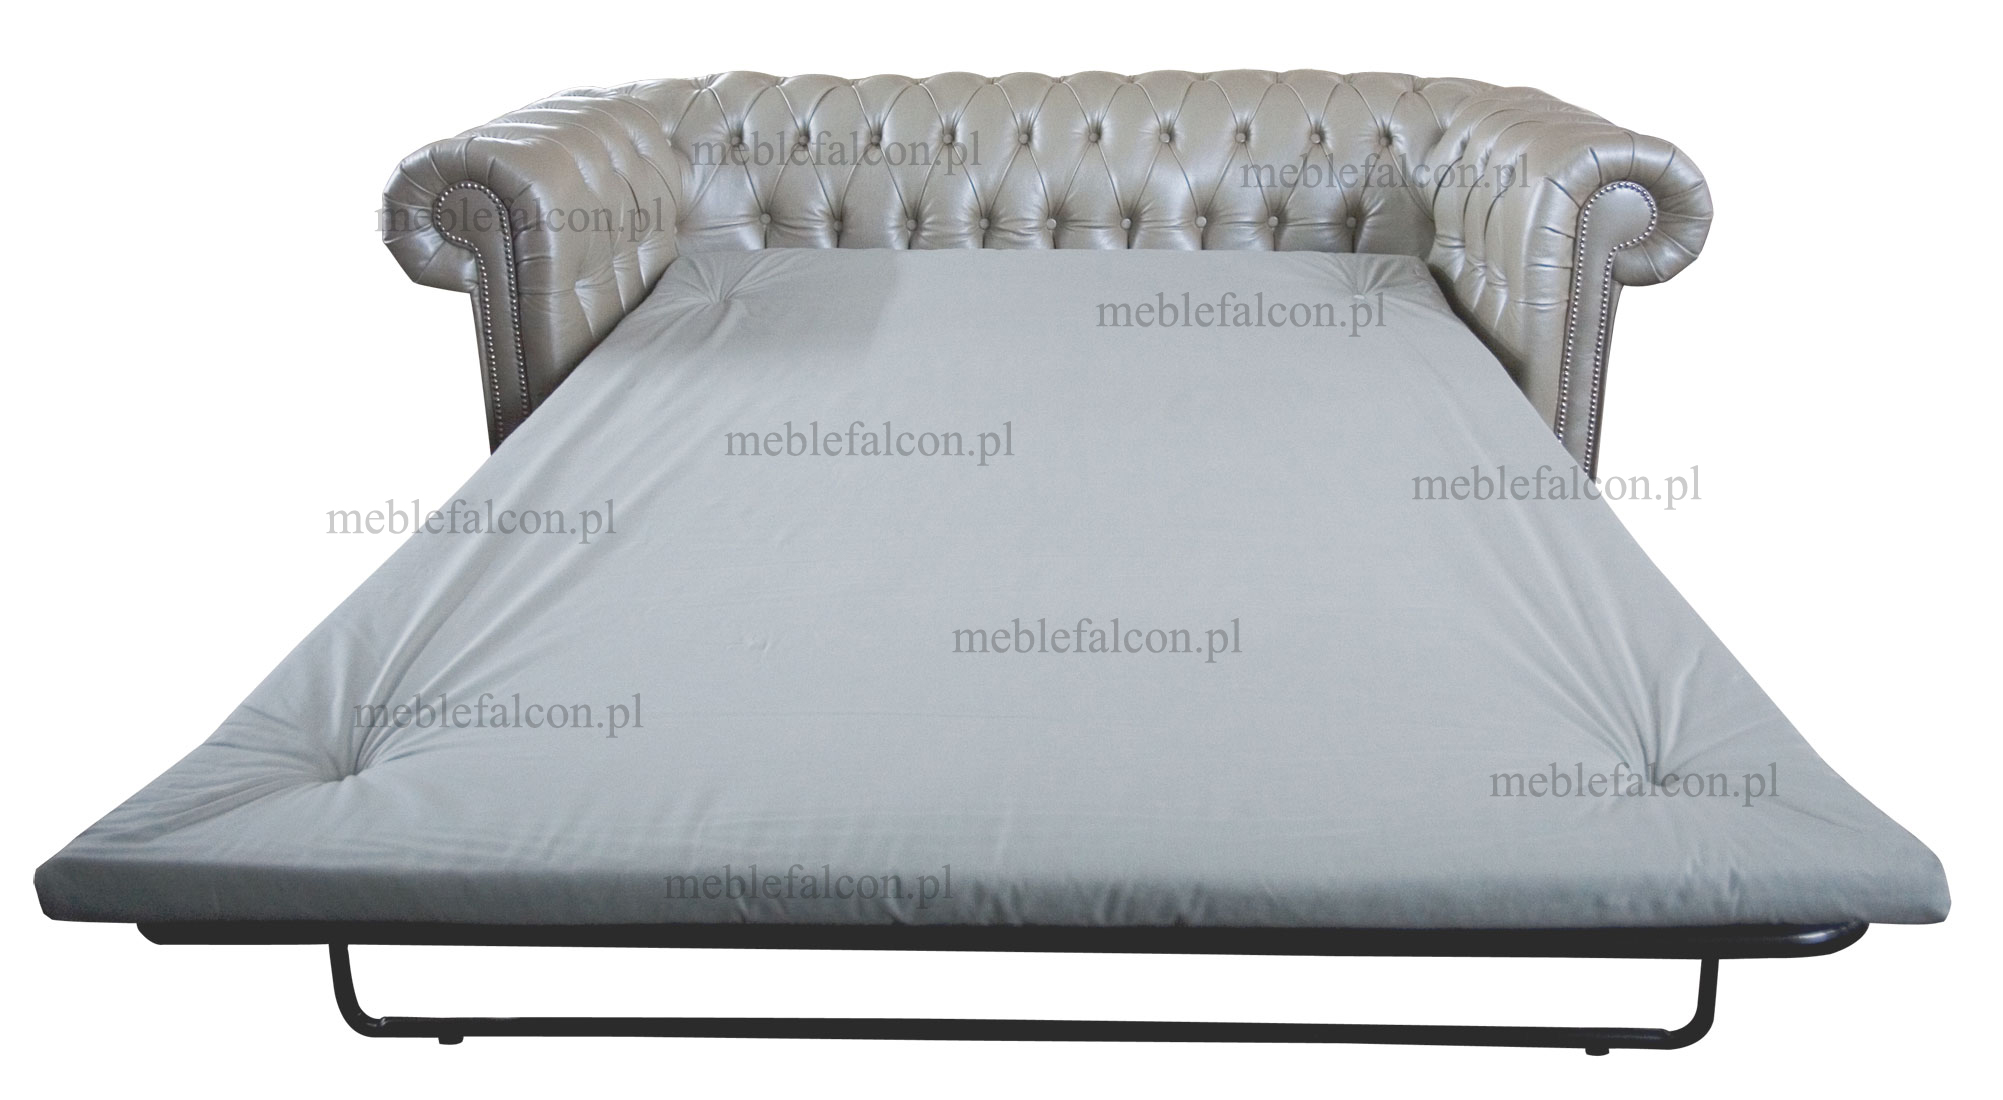 stylowa wygodna sofa chesterfield z funkcją spania w tapicerce skórzanej charmonijna i wysublimowana